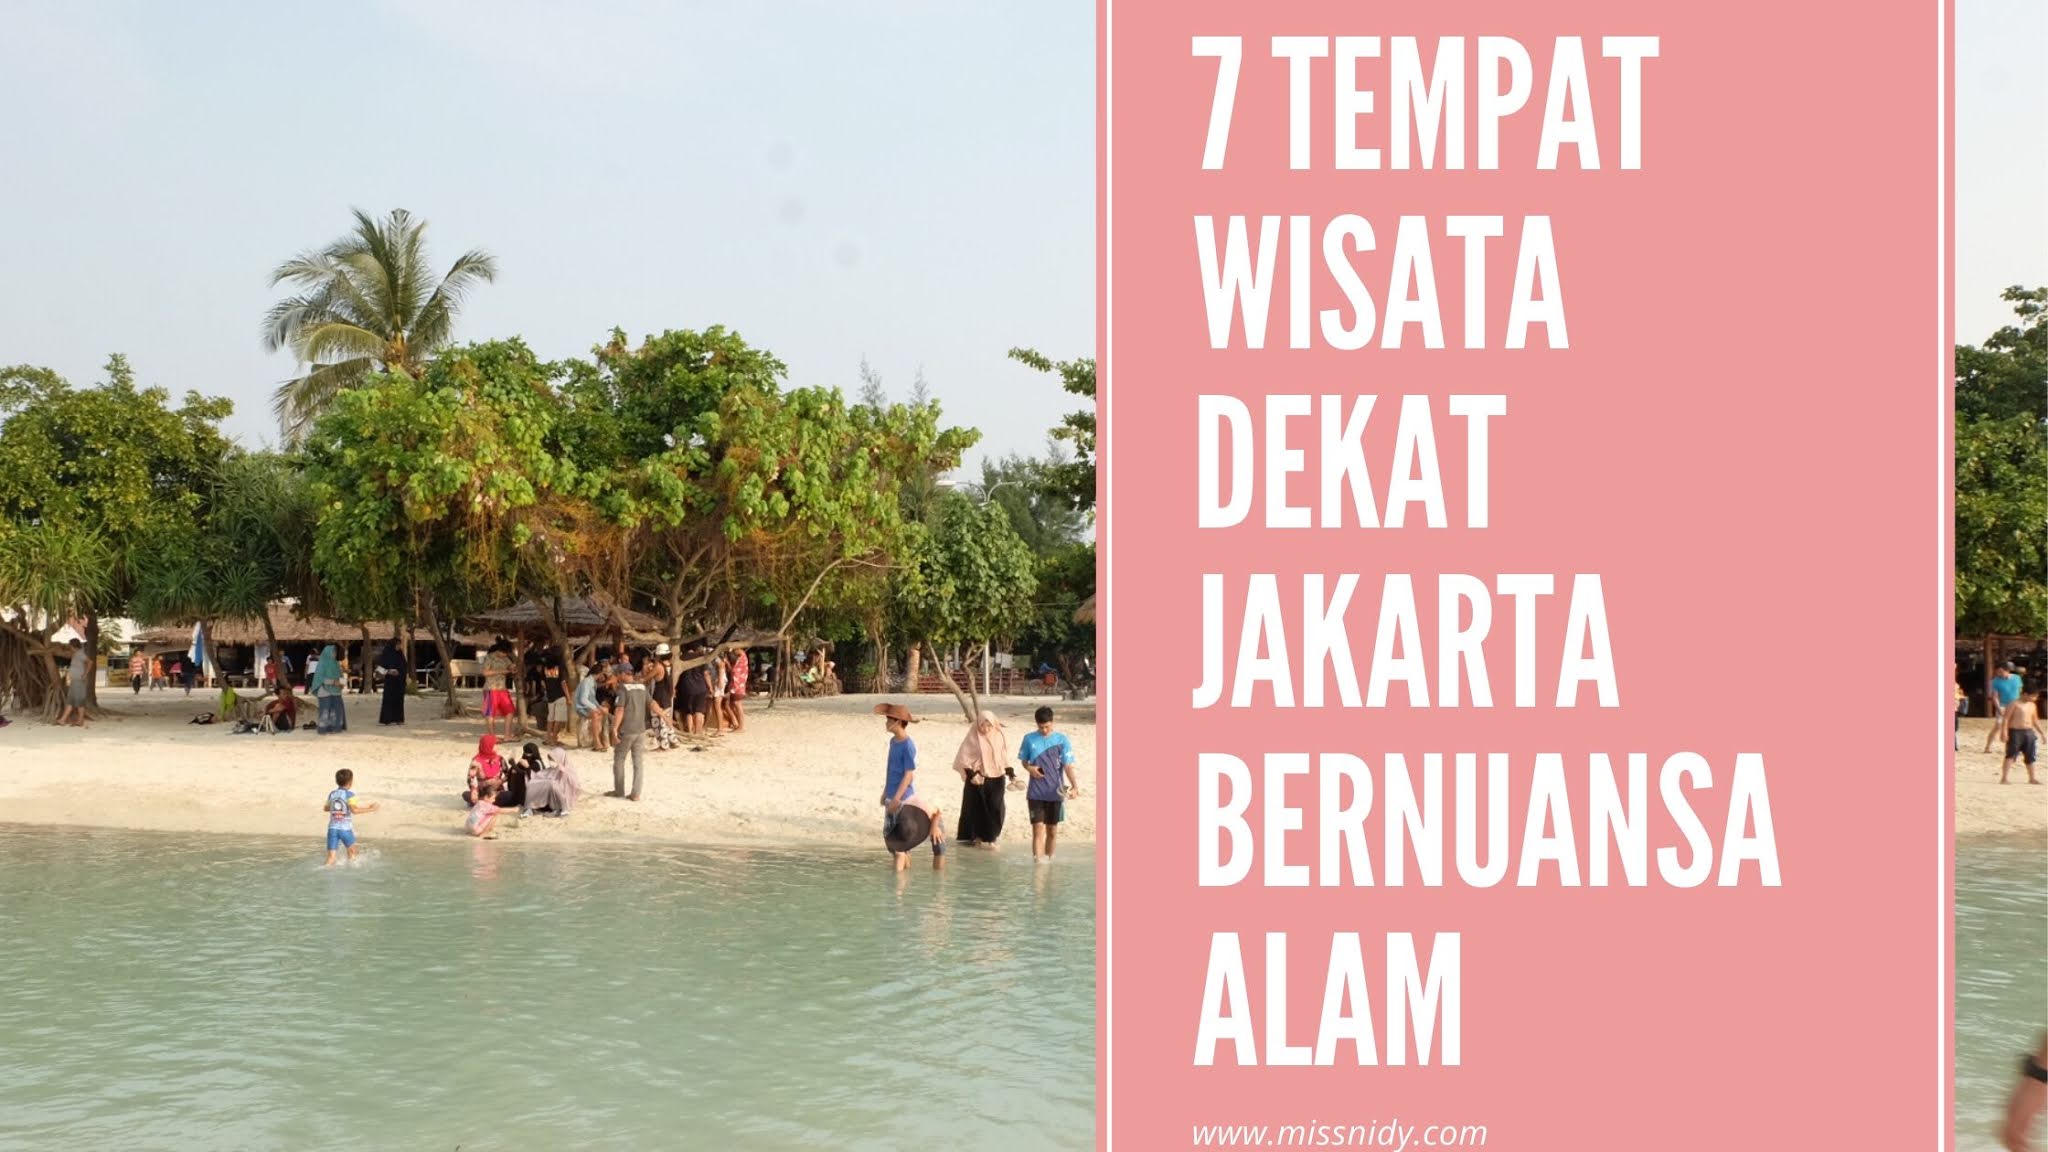 7 Tempat  Wisata  Dekat  Jakarta Bernuansa Alam Mudah Diakses